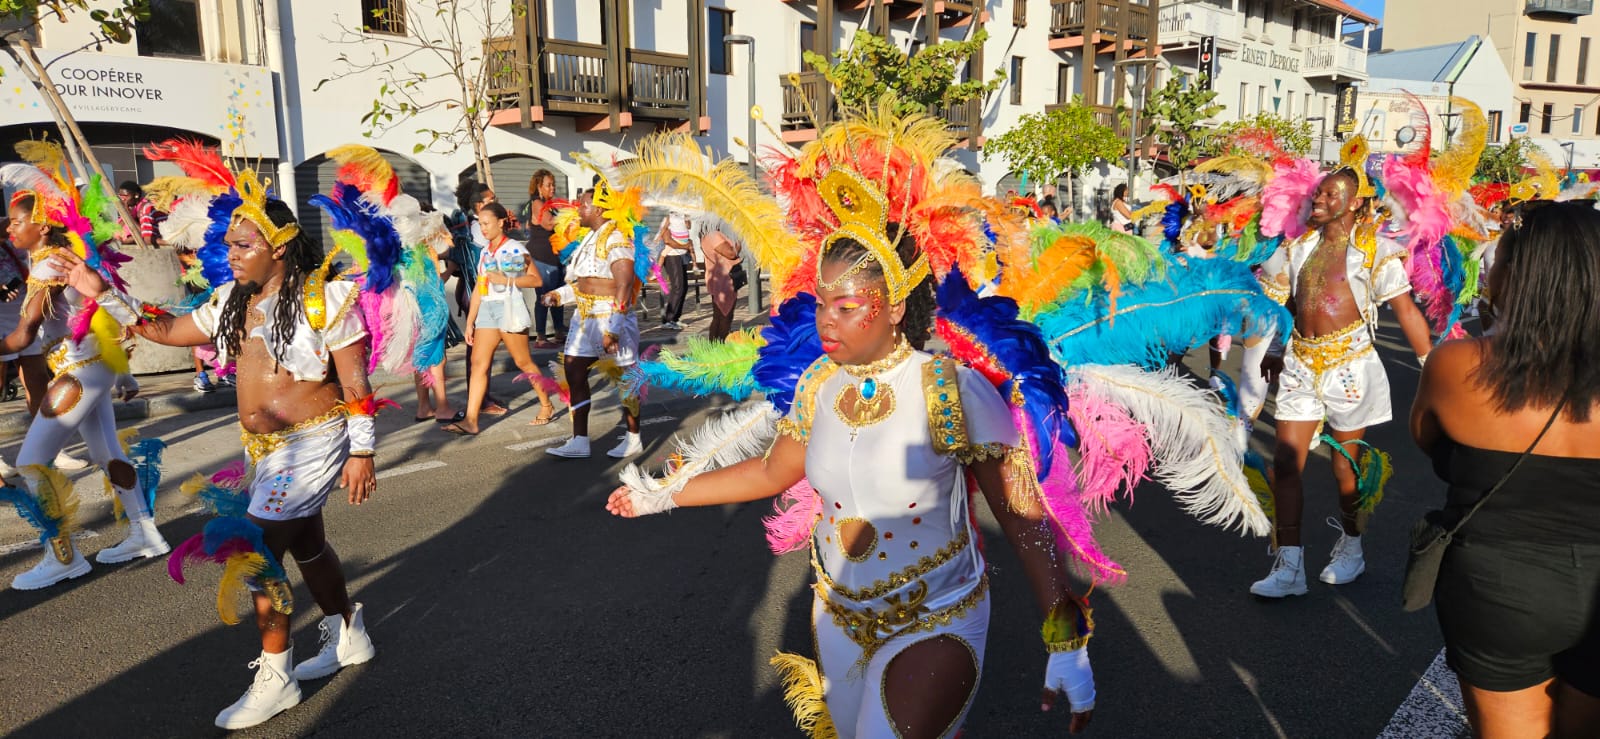     [EN IMAGES] Festival de couleurs et de costumes pour la Foyal Parade à Fort-de-France

